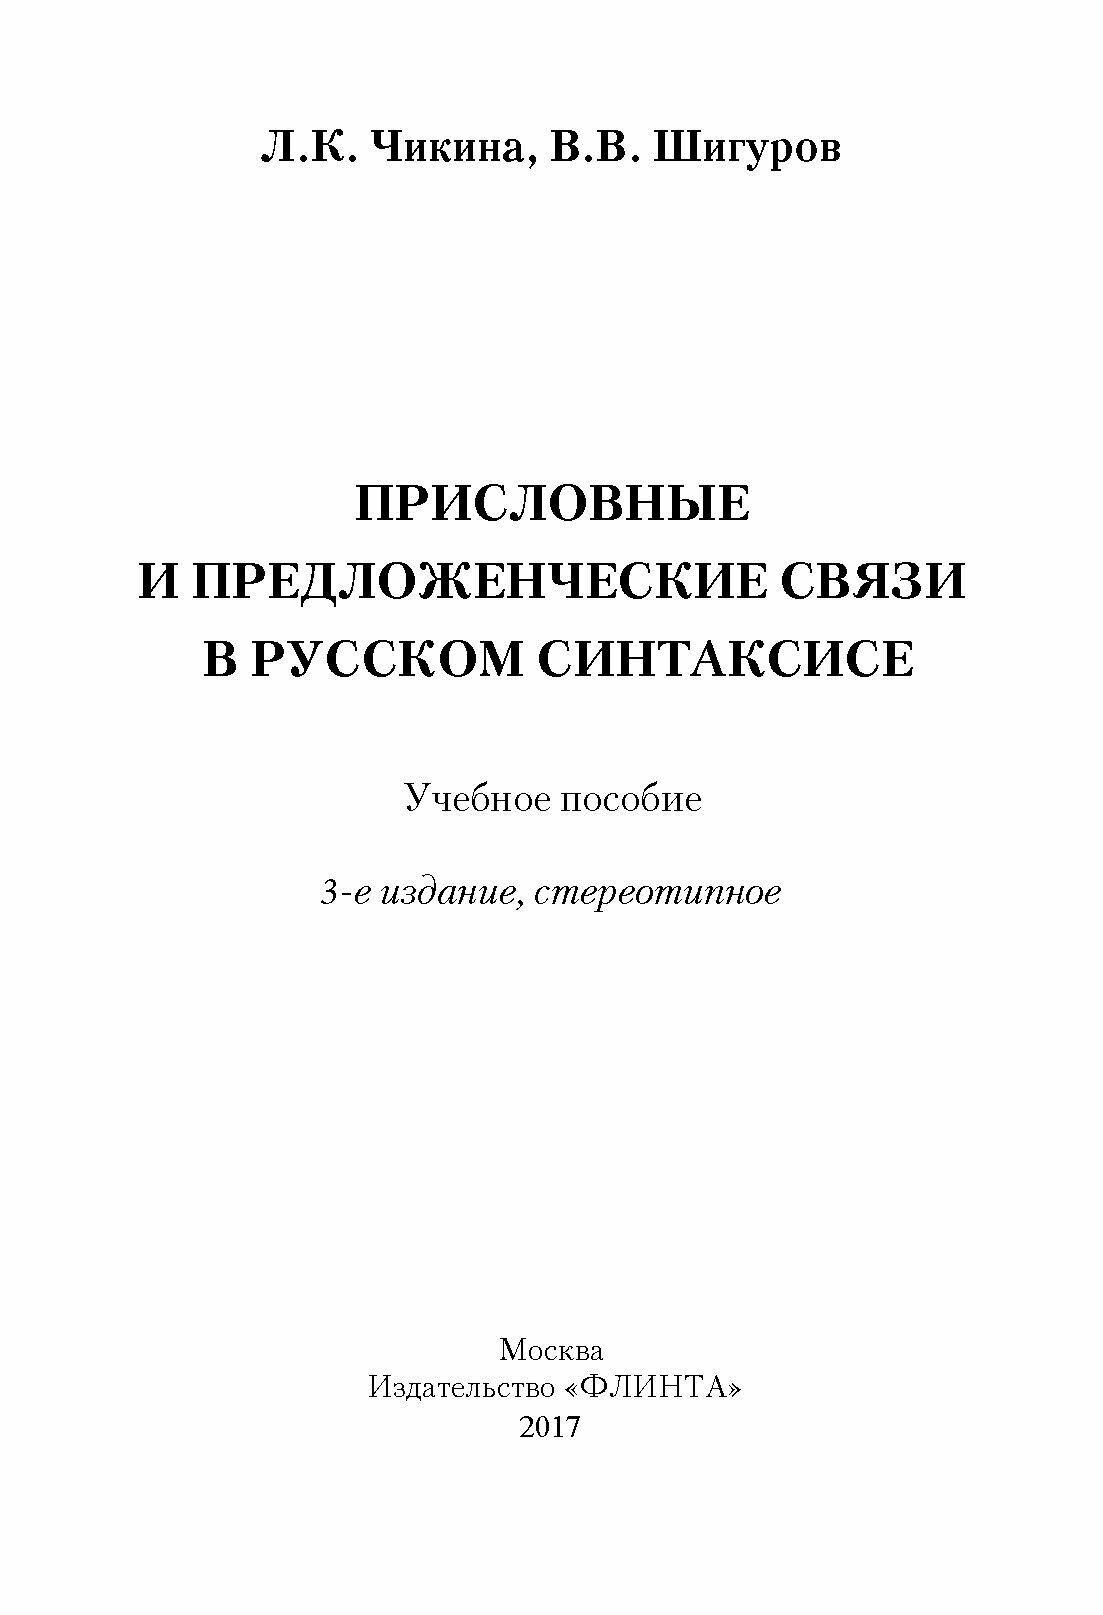 Присловные и предложенческие связи в русском синтаксисе. Учебное пособие - фото №6